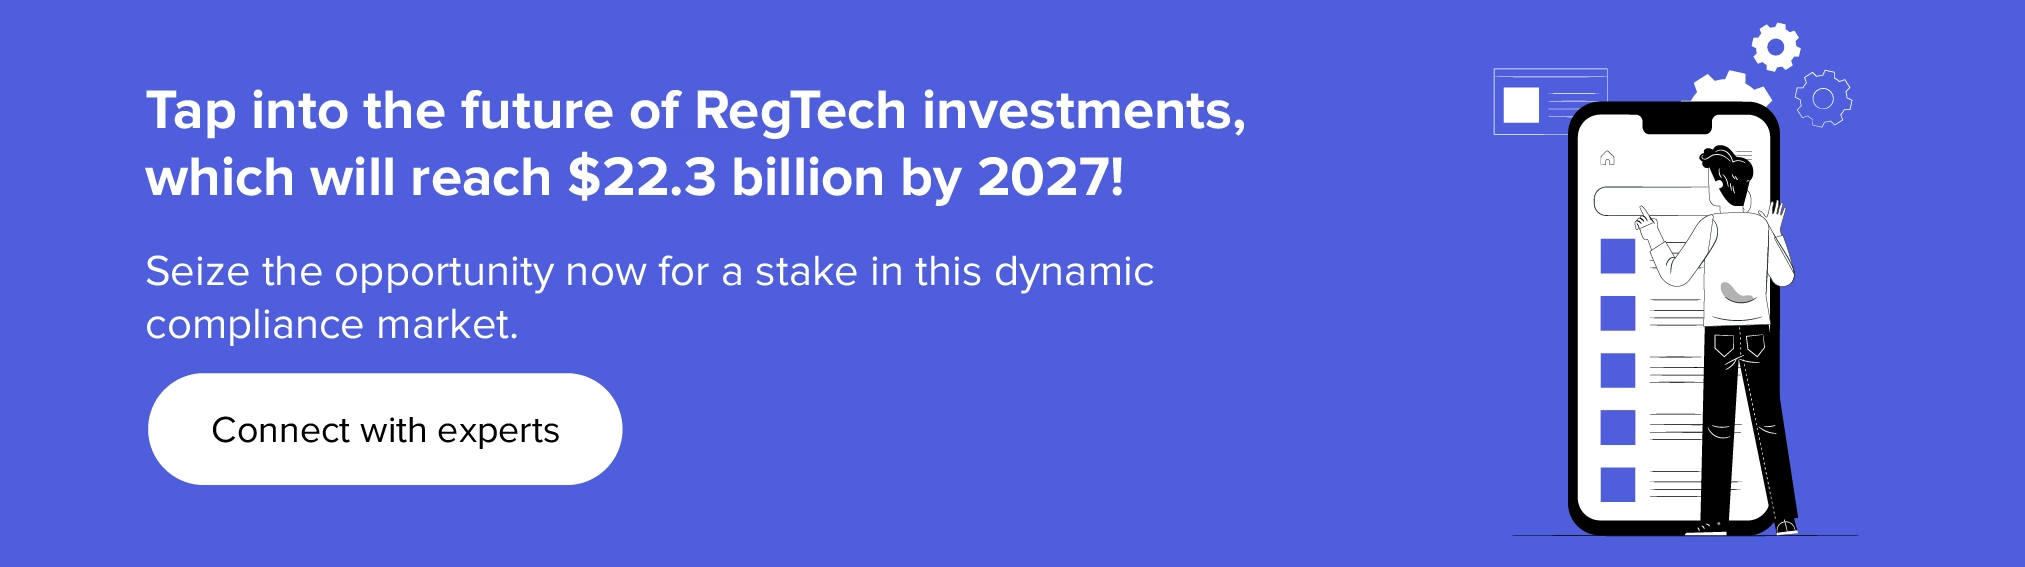 Откройте для себя будущее инвестиций в RegTech вместе с нашими экспертами